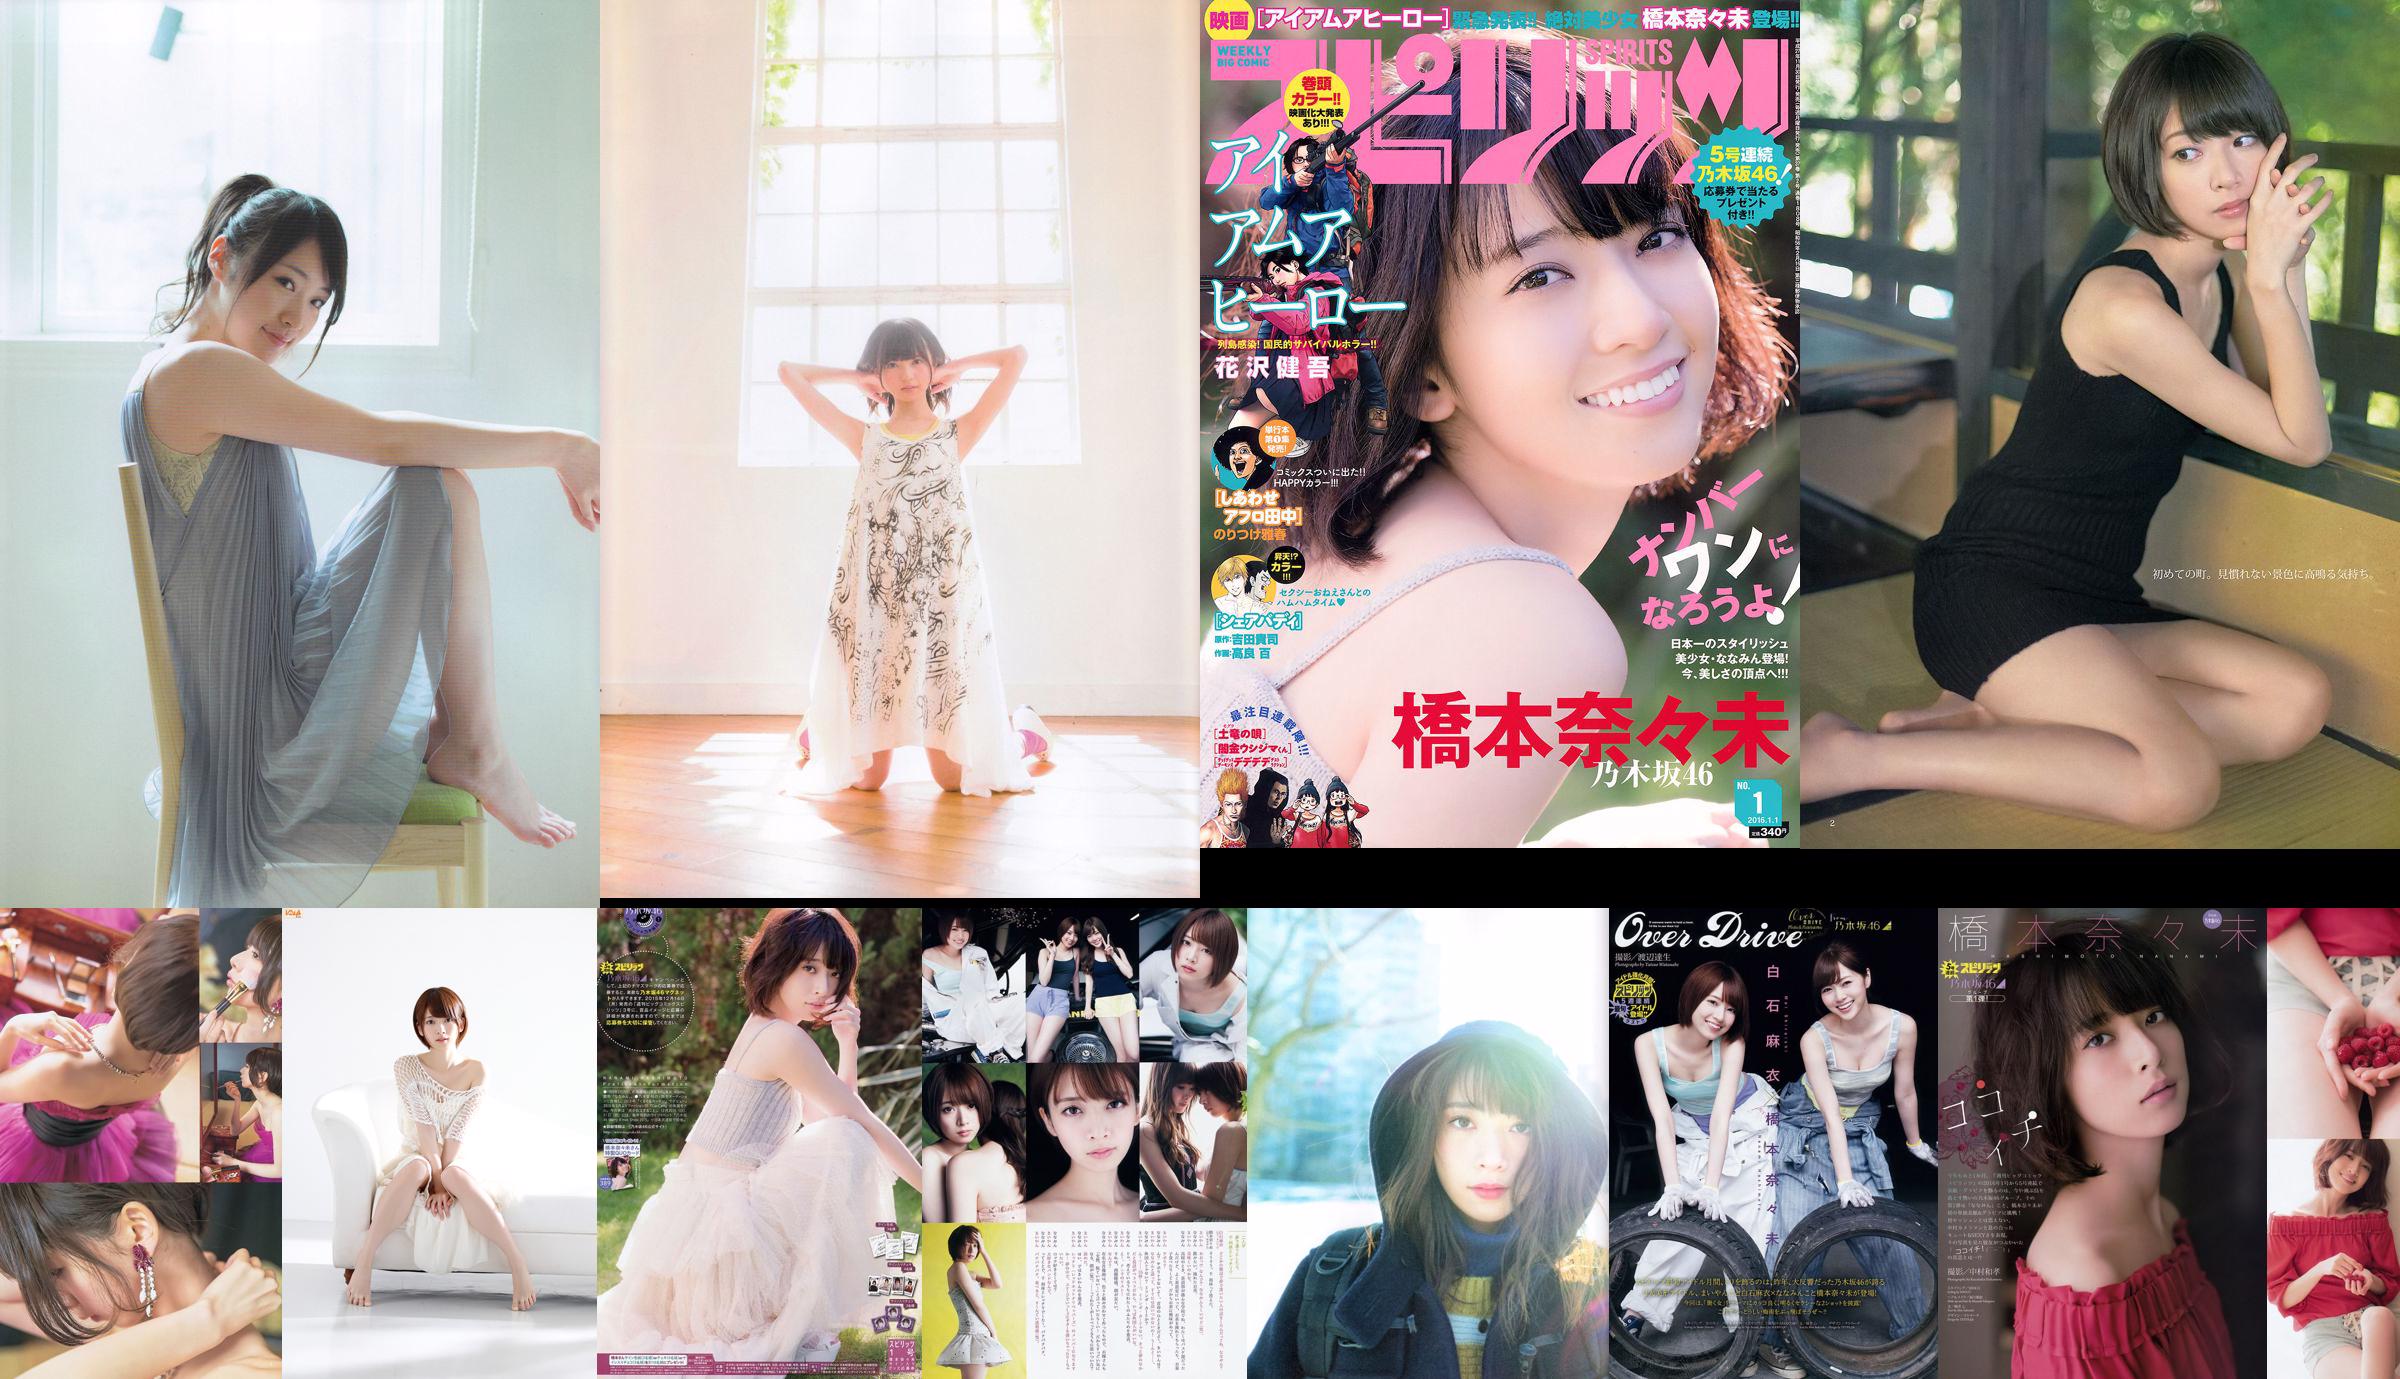 Hashimoto Nasumi Momokawa Haruka Trường trung học cơ sở tư thục Ebisu [Weekly Young Jump] Tạp chí ảnh số 51 năm 2013 No.62e805 Trang 1